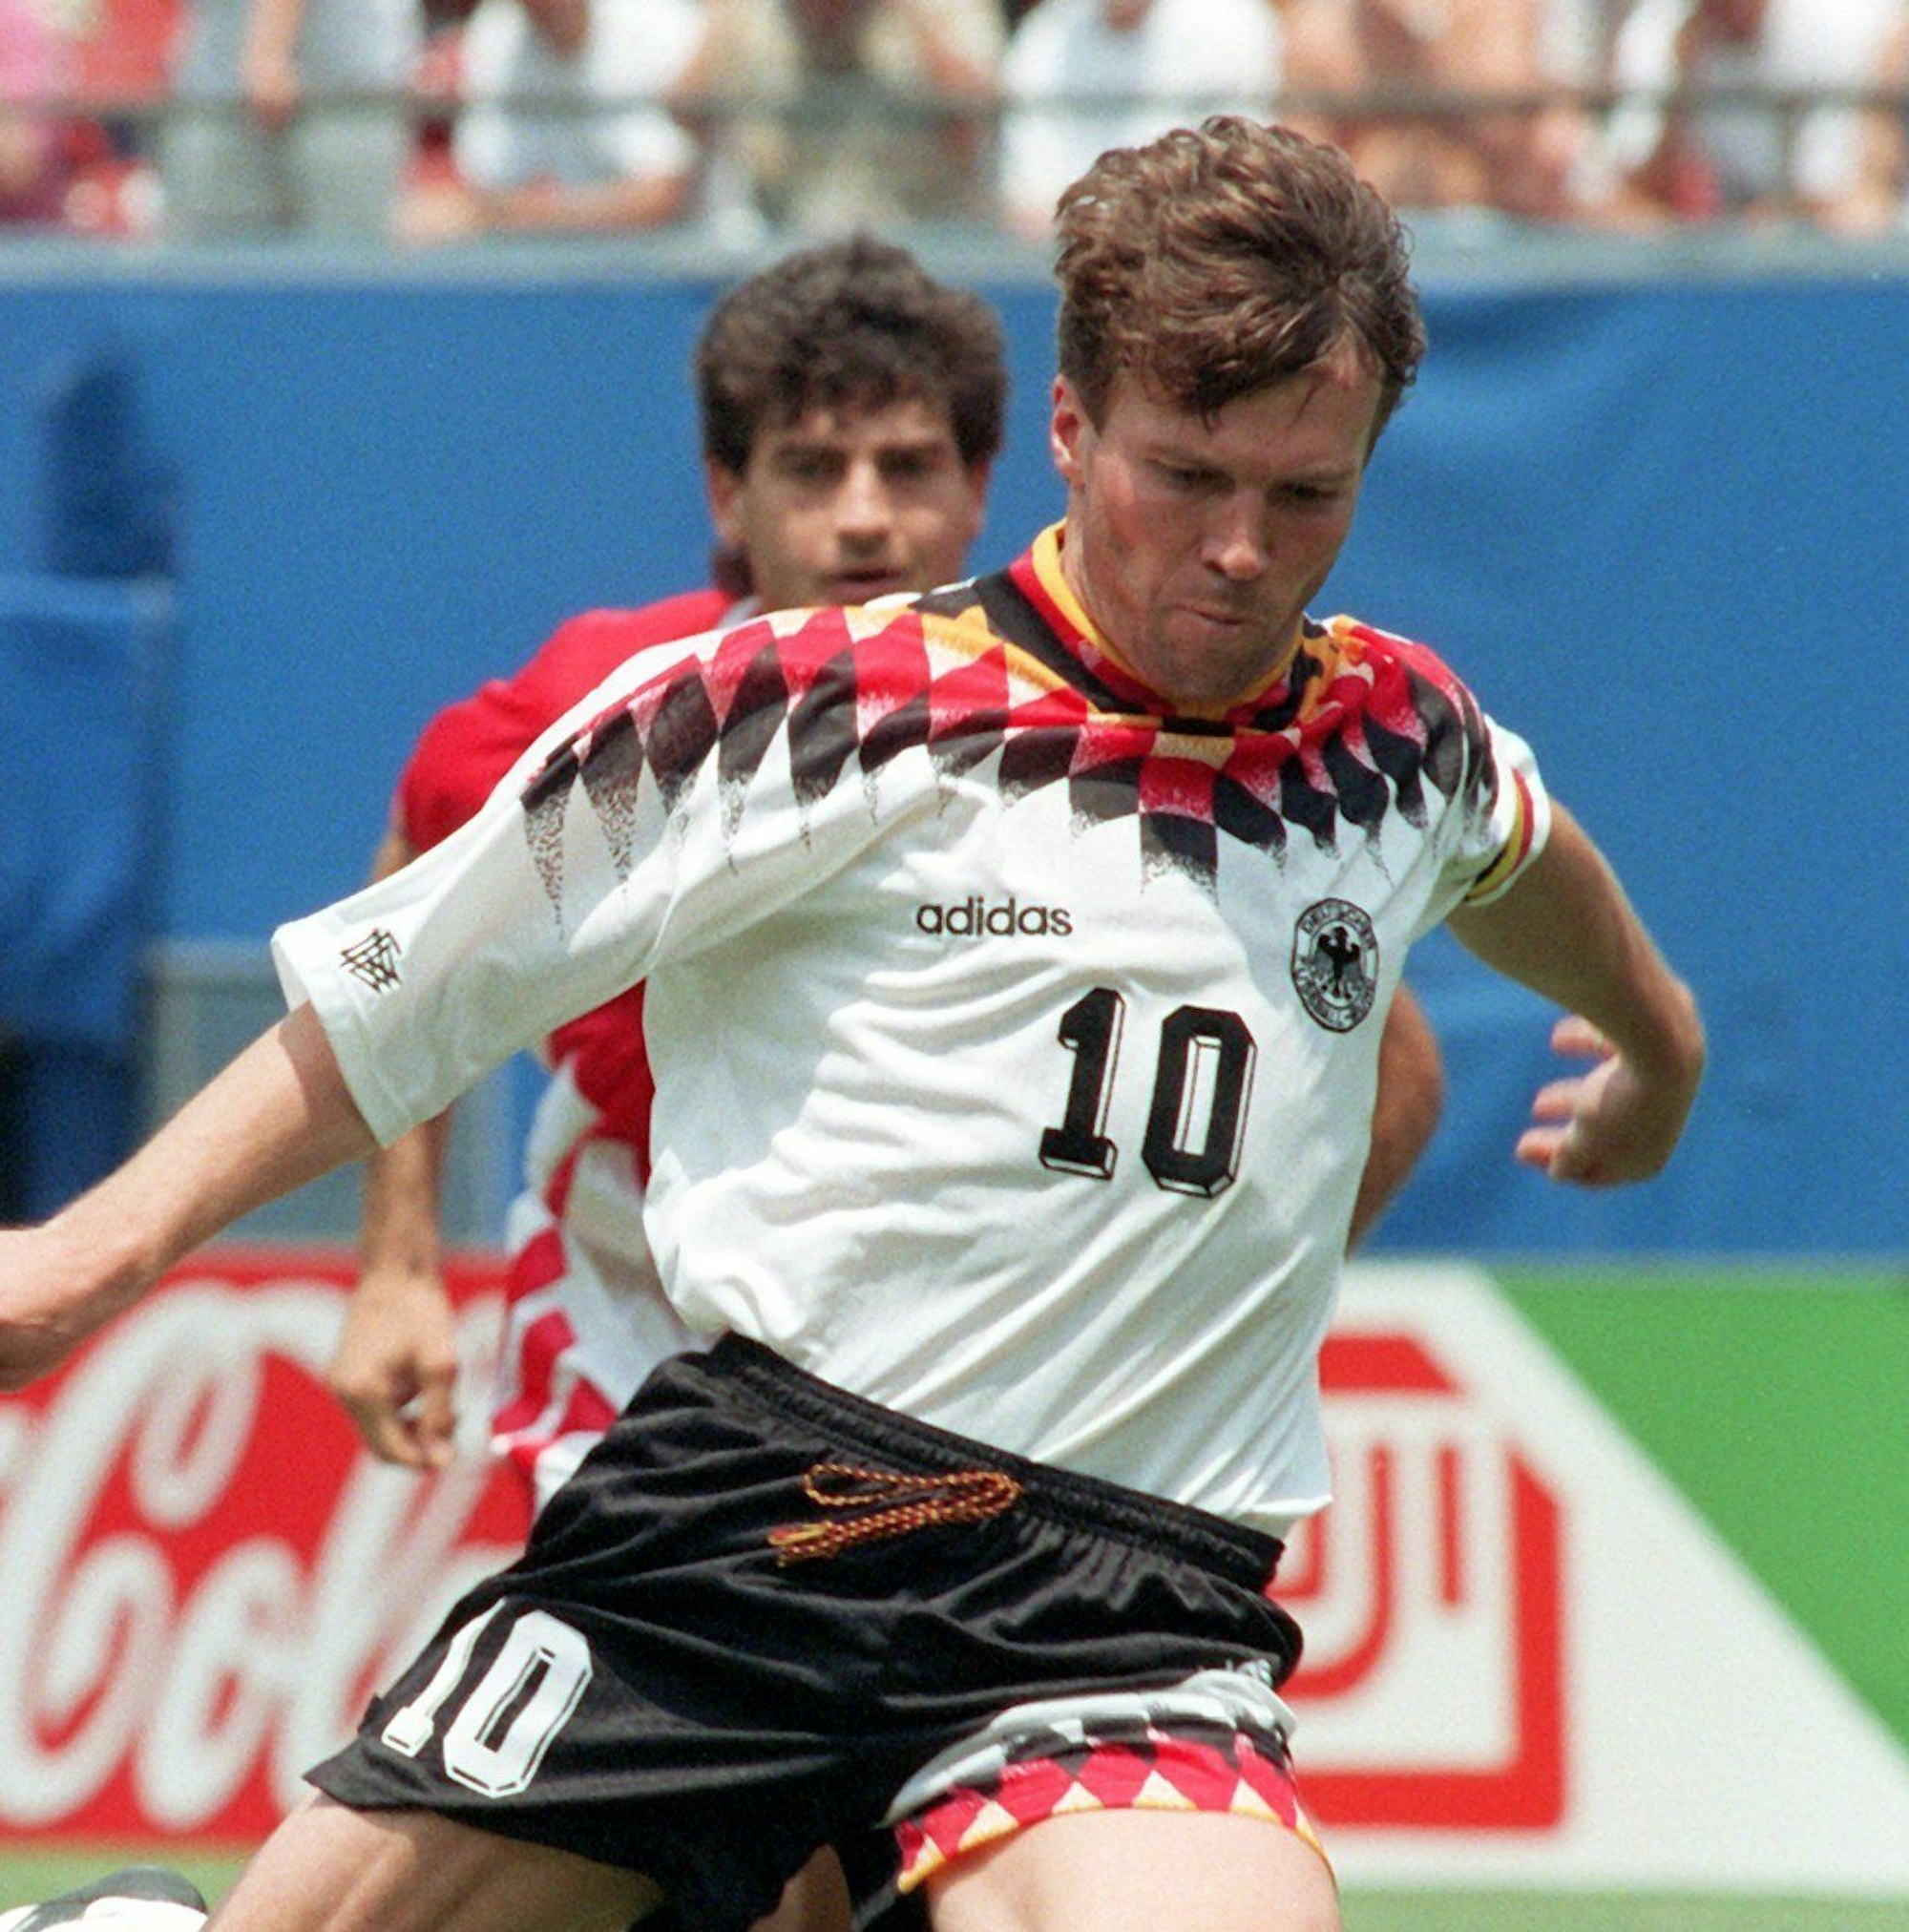 Der ehemalige Mannschaftskaptitän der deutschen Fußball-Nationalmannschaft, Lothar Matthäus, verwandelt auf dem Archivbild am 10.07.1994 im New Yorker Giants Stadium in der 49. Minute einen Foul-Elfmeter zur 1:0-Führung im Spiel gegen Bulgarien.